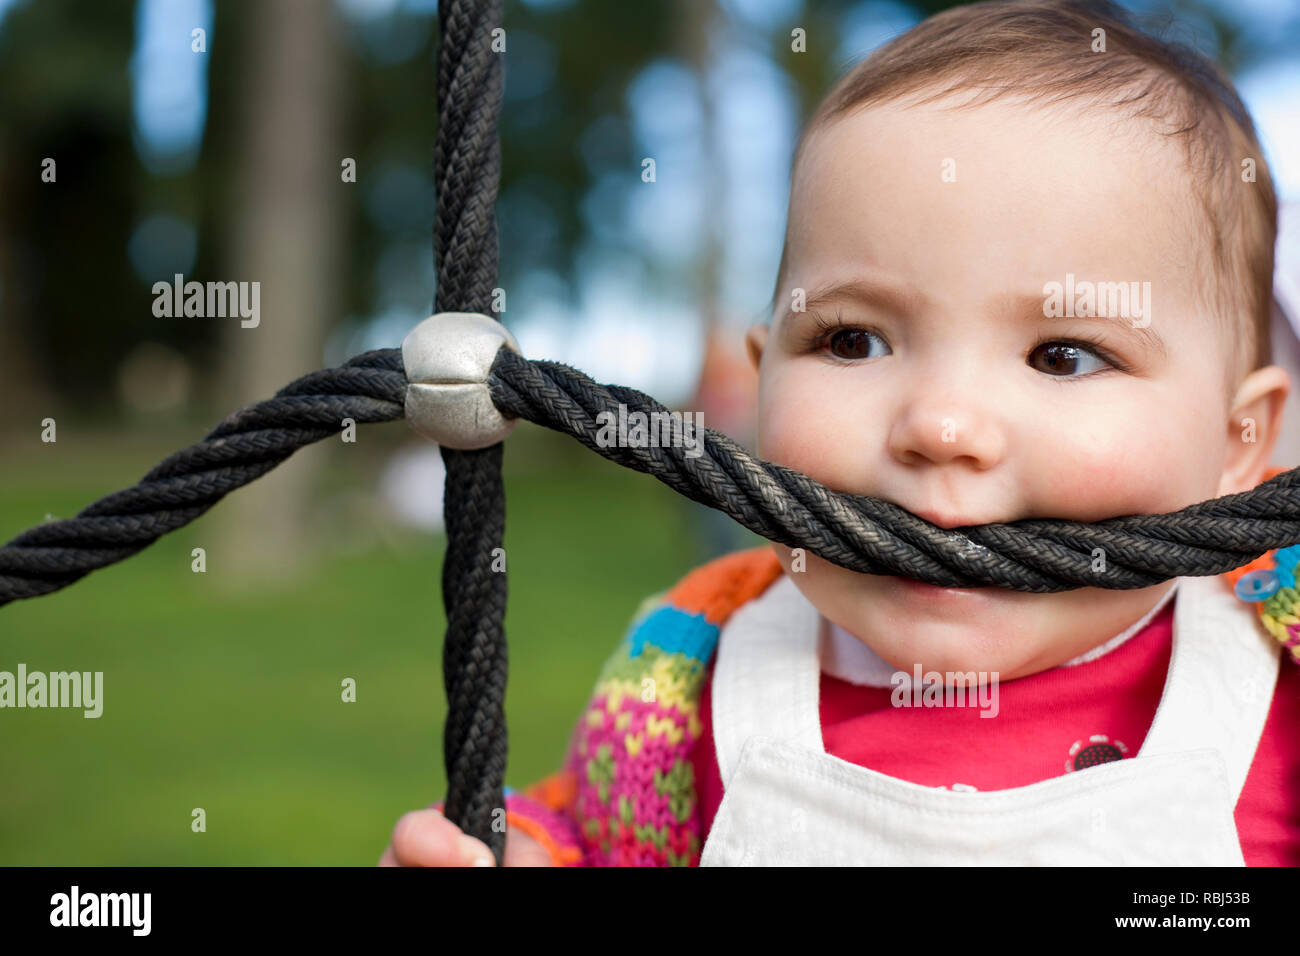 11 mois baby girl biting aire de corde qu'il s'agissait d'une dentition. Pour les bébés de dentition mordre et concept Banque D'Images